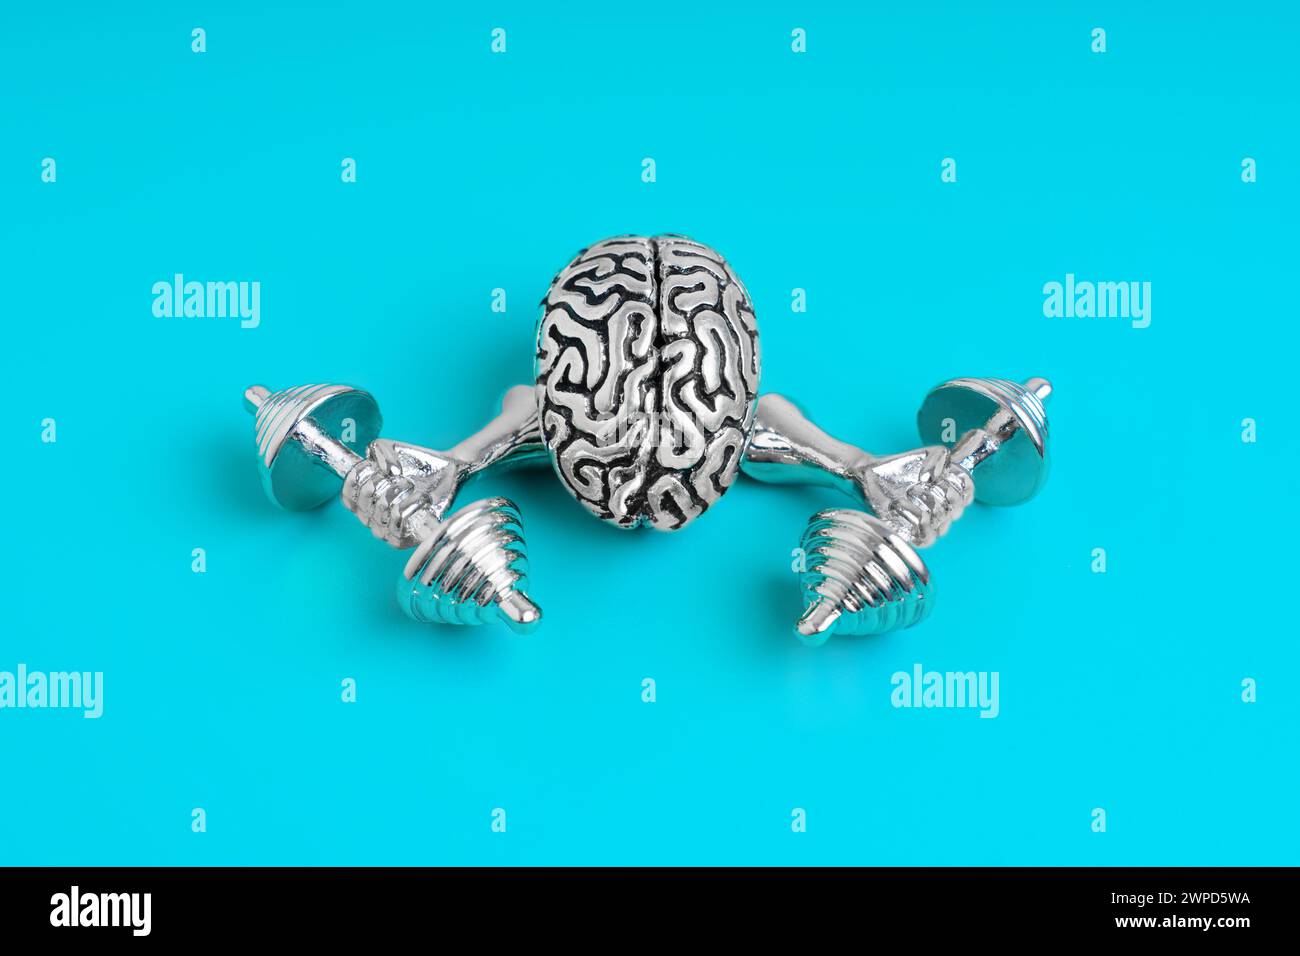 Modello metallico del cervello umano, dotato di mani forti, che solleva pesanti manubri isolati su sfondo blu. Foto Stock